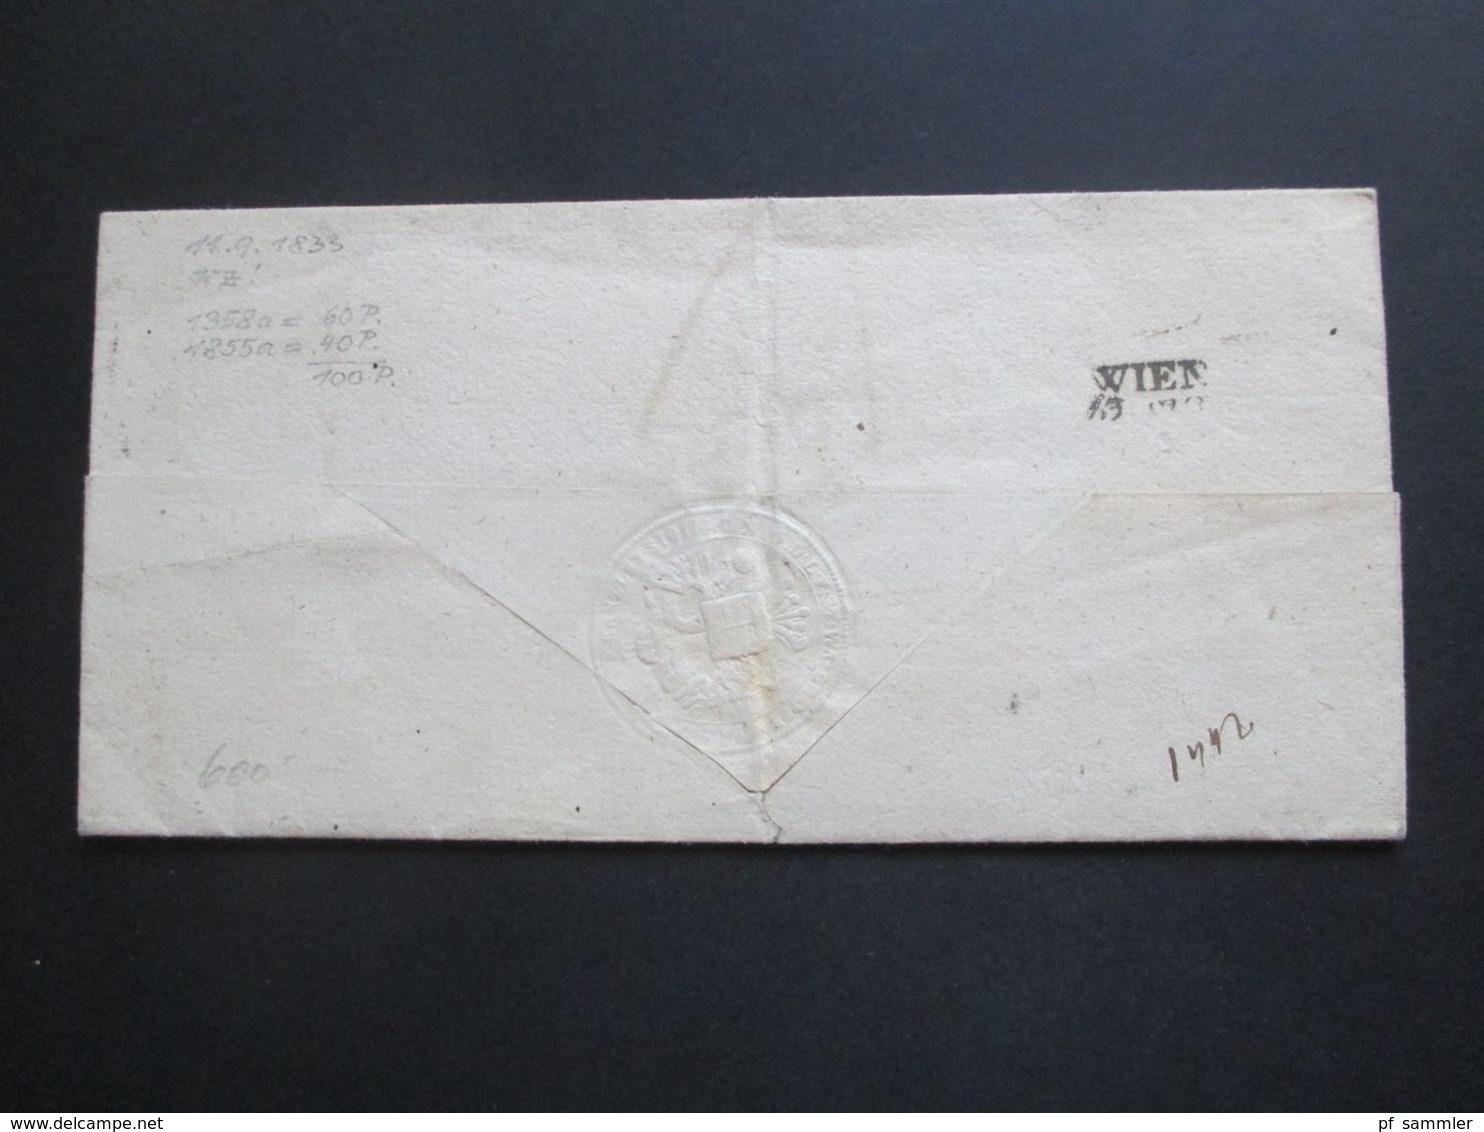 Österreich 11.9.1833 Dienstbrief mit vielen Stempeln und Vermerken u.a. Ra 1 Wien : Tax und oval Stp. Schw...